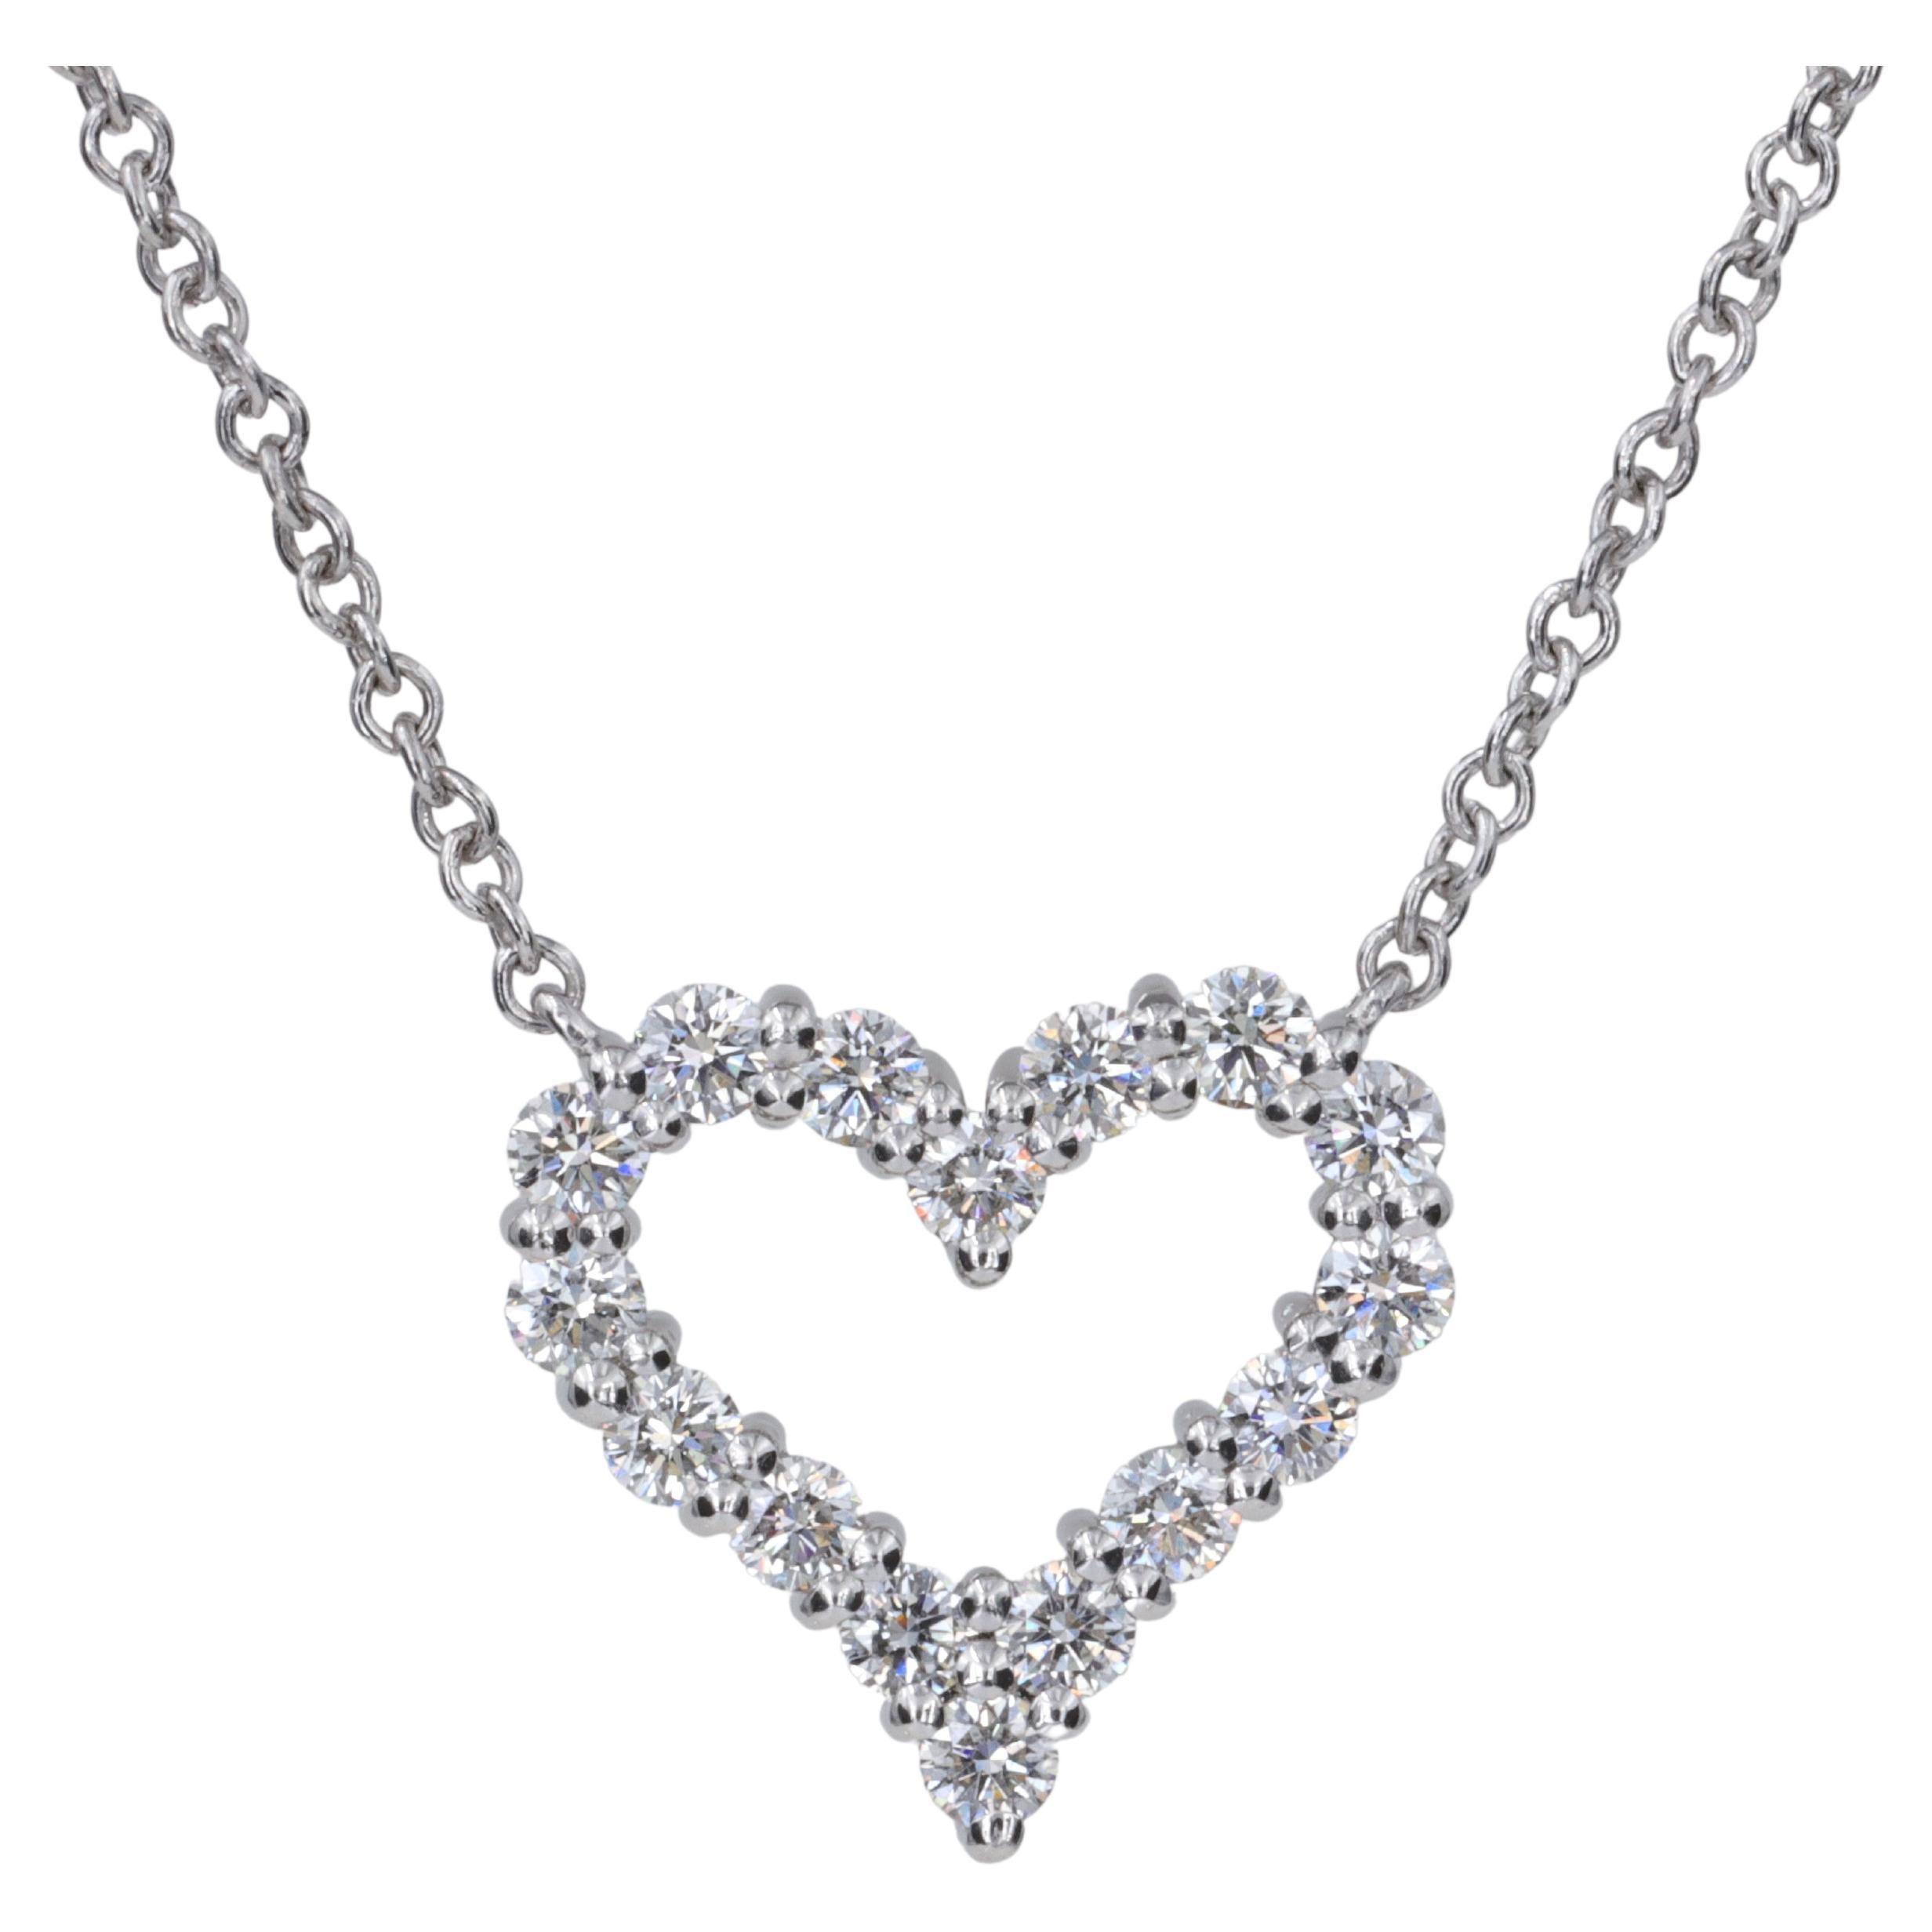 Tiffany & Co. Collier pendentif cœur en platine et diamants